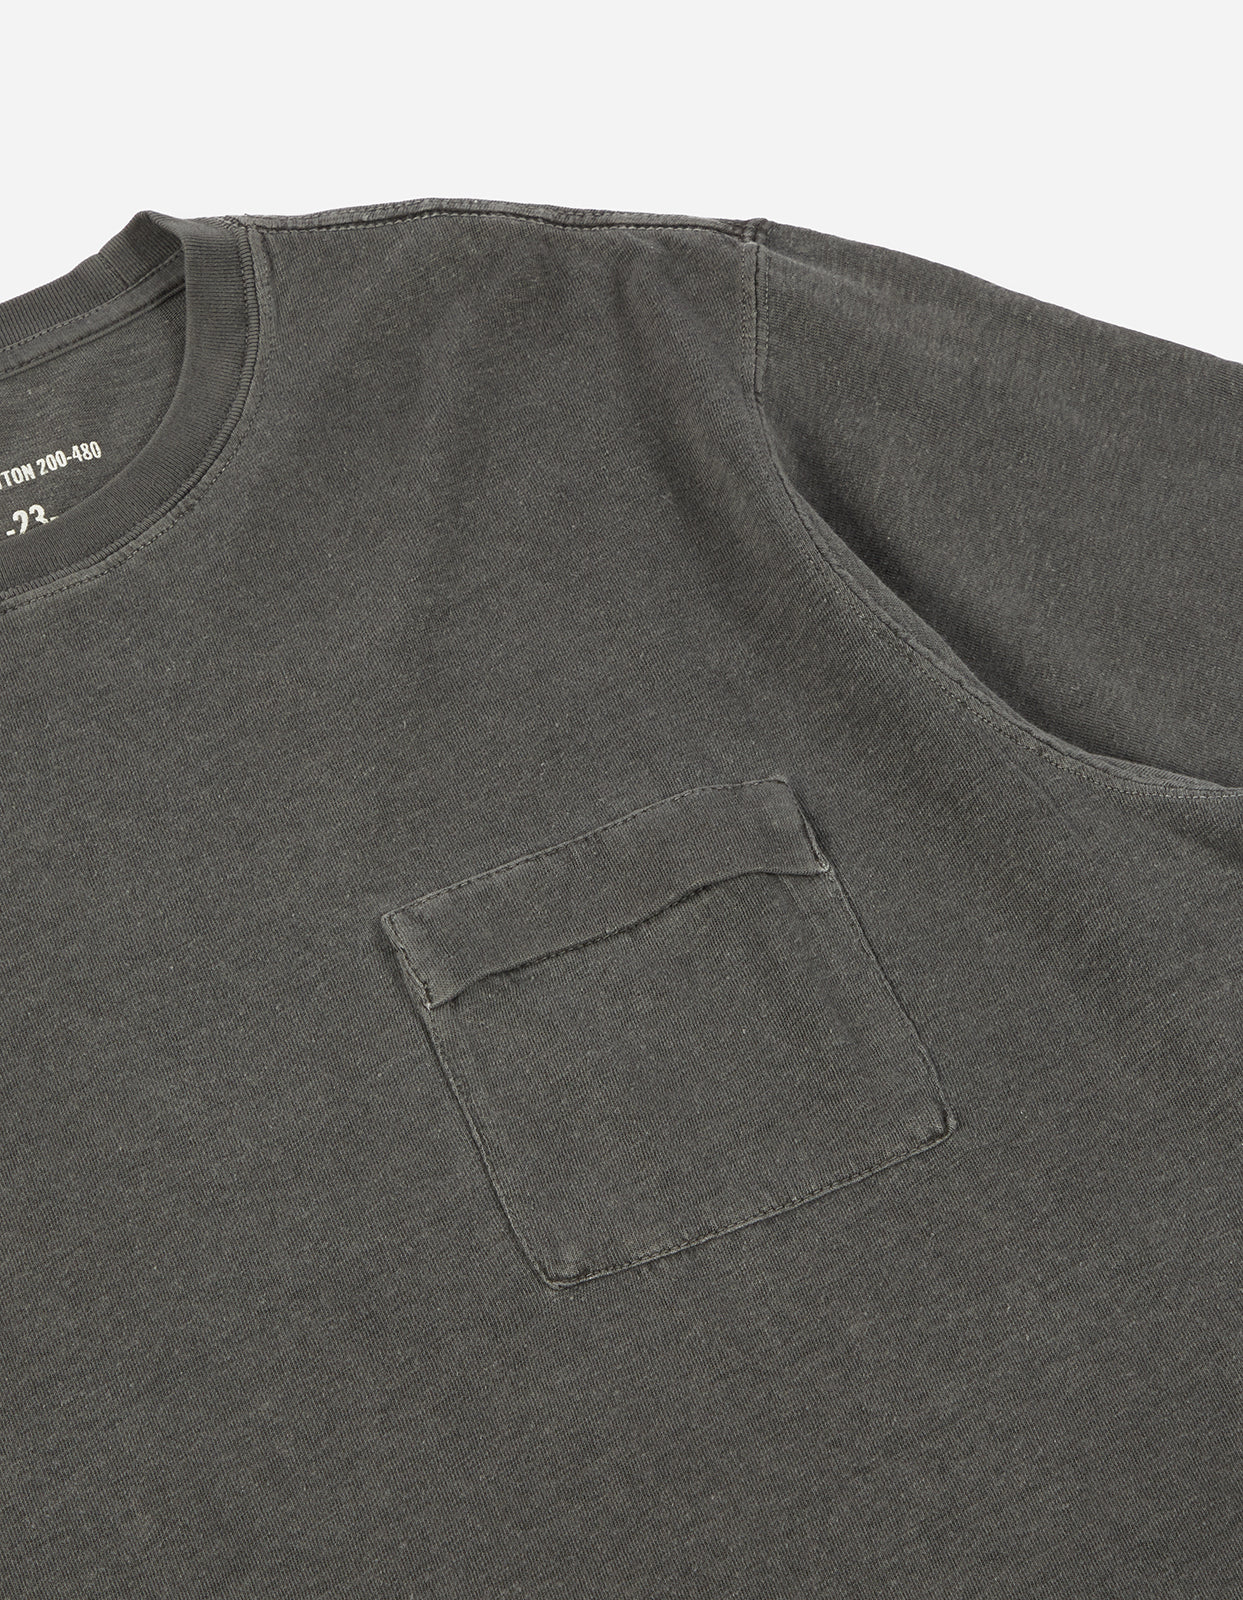 7021 Hemp Organic Pocket T-Shirt  Black